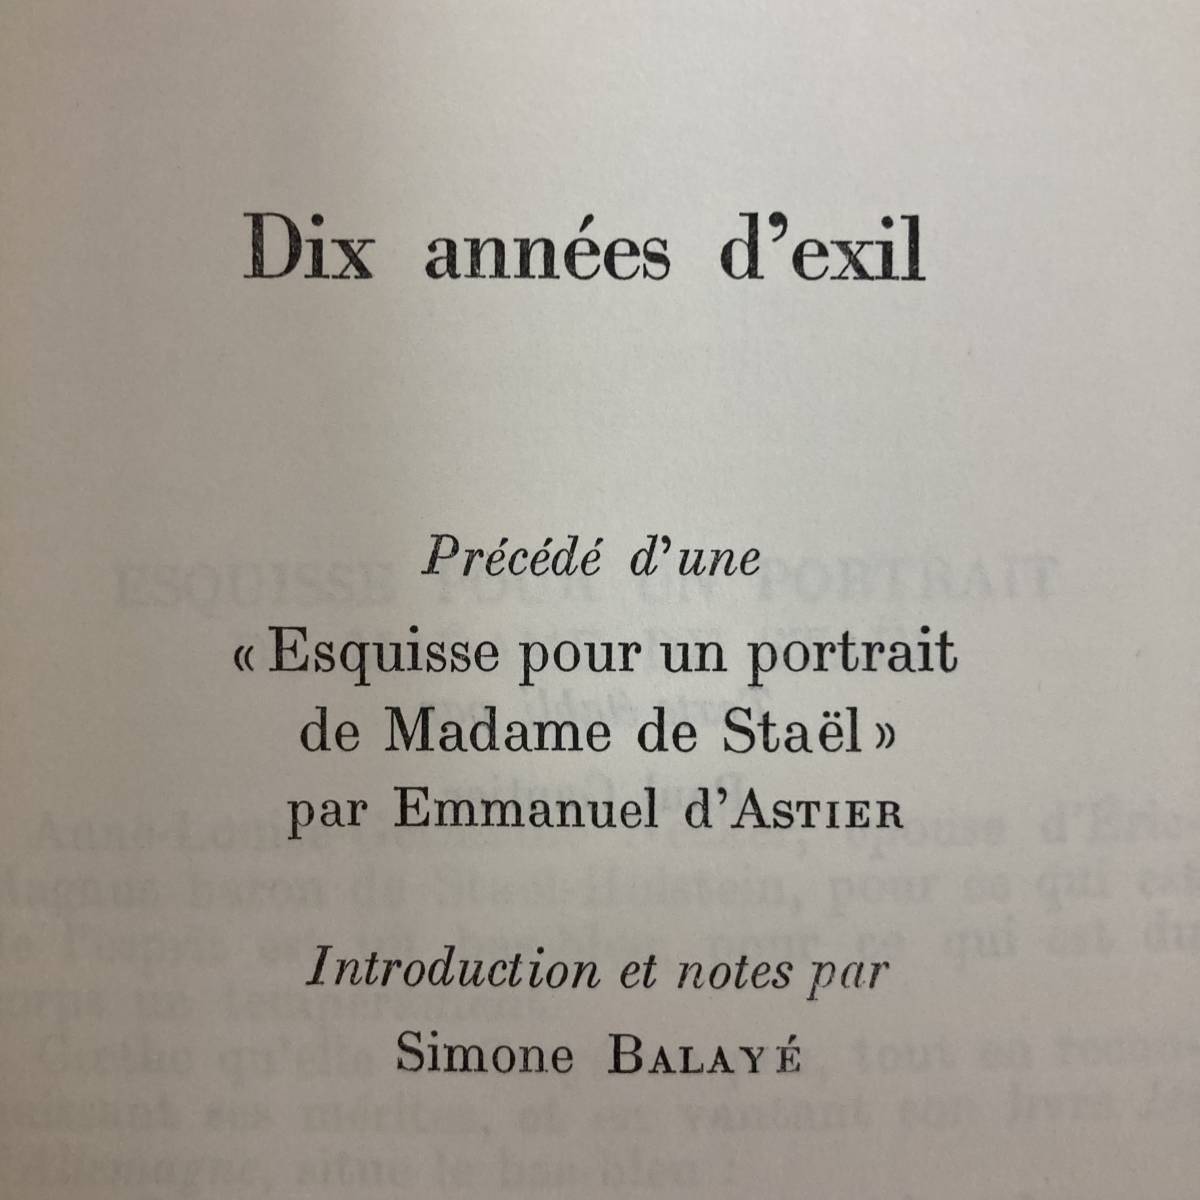 【仏語洋書】Dix annees d’exil / スタール夫人 Madame de Stael（著）【フランス革命】_画像3